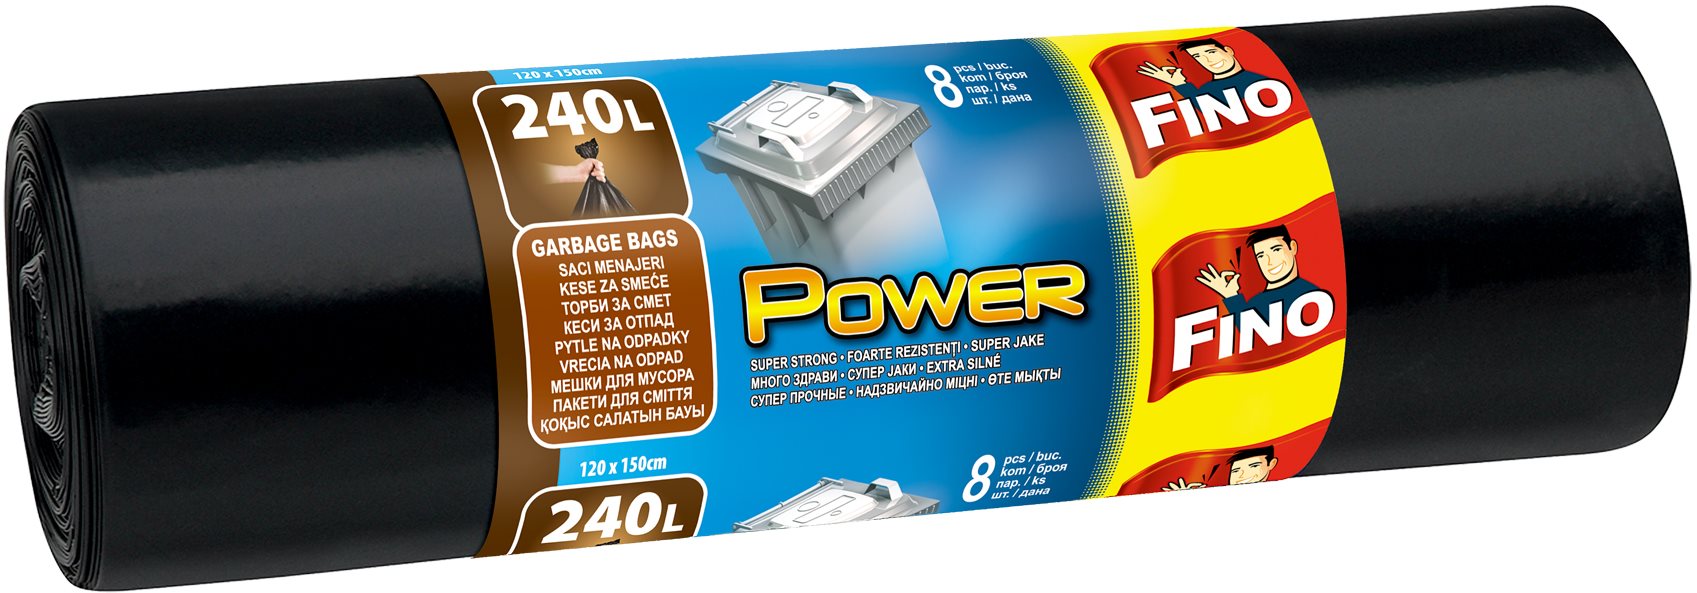 FINO Power 240 l, 8 db